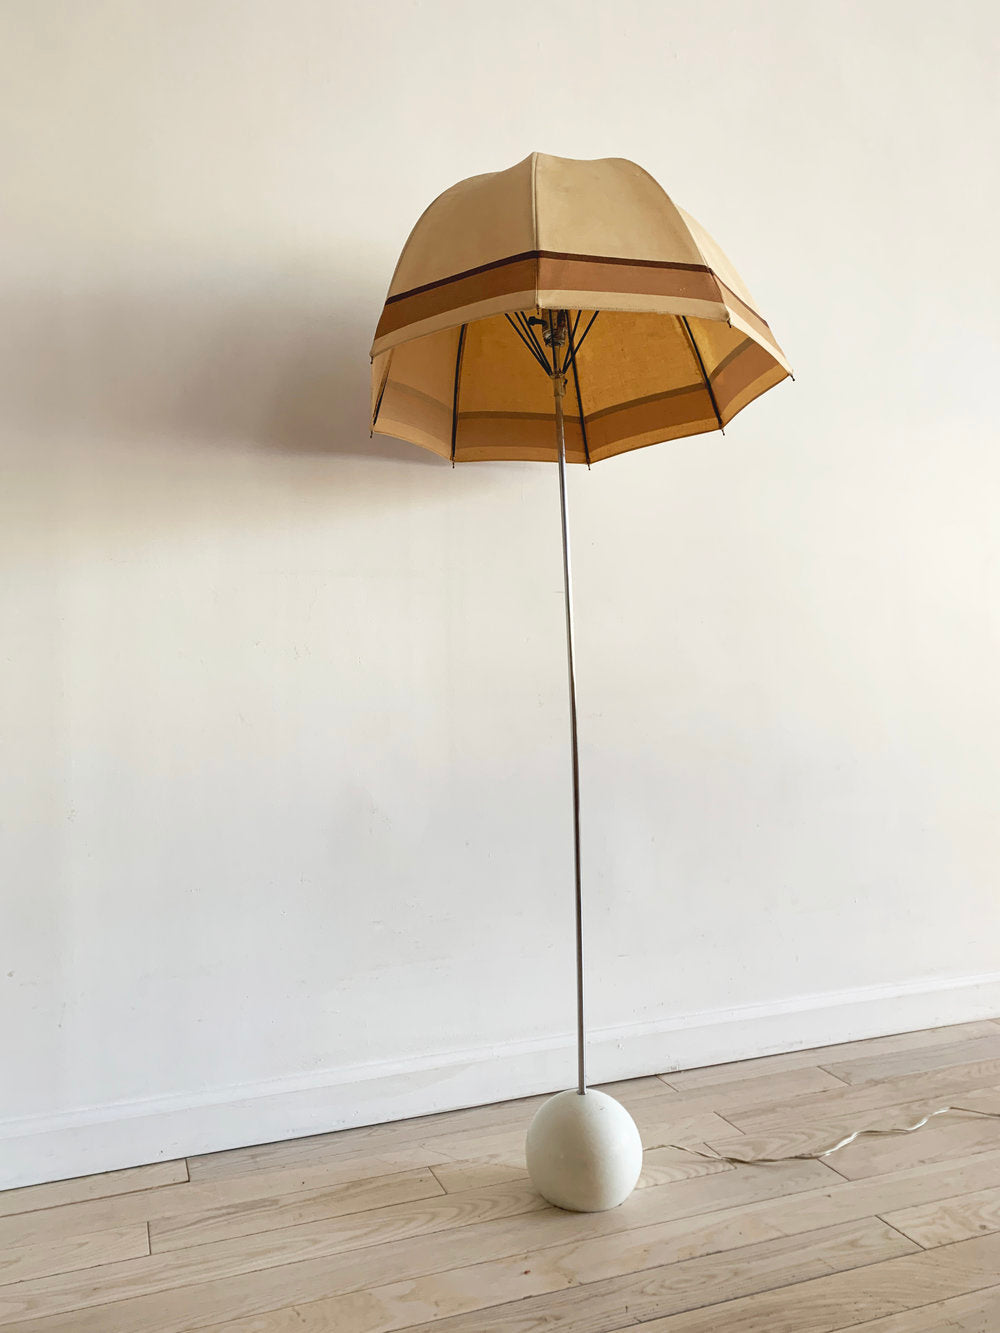 1975 George Kovacs Umbrella Floor Lamp